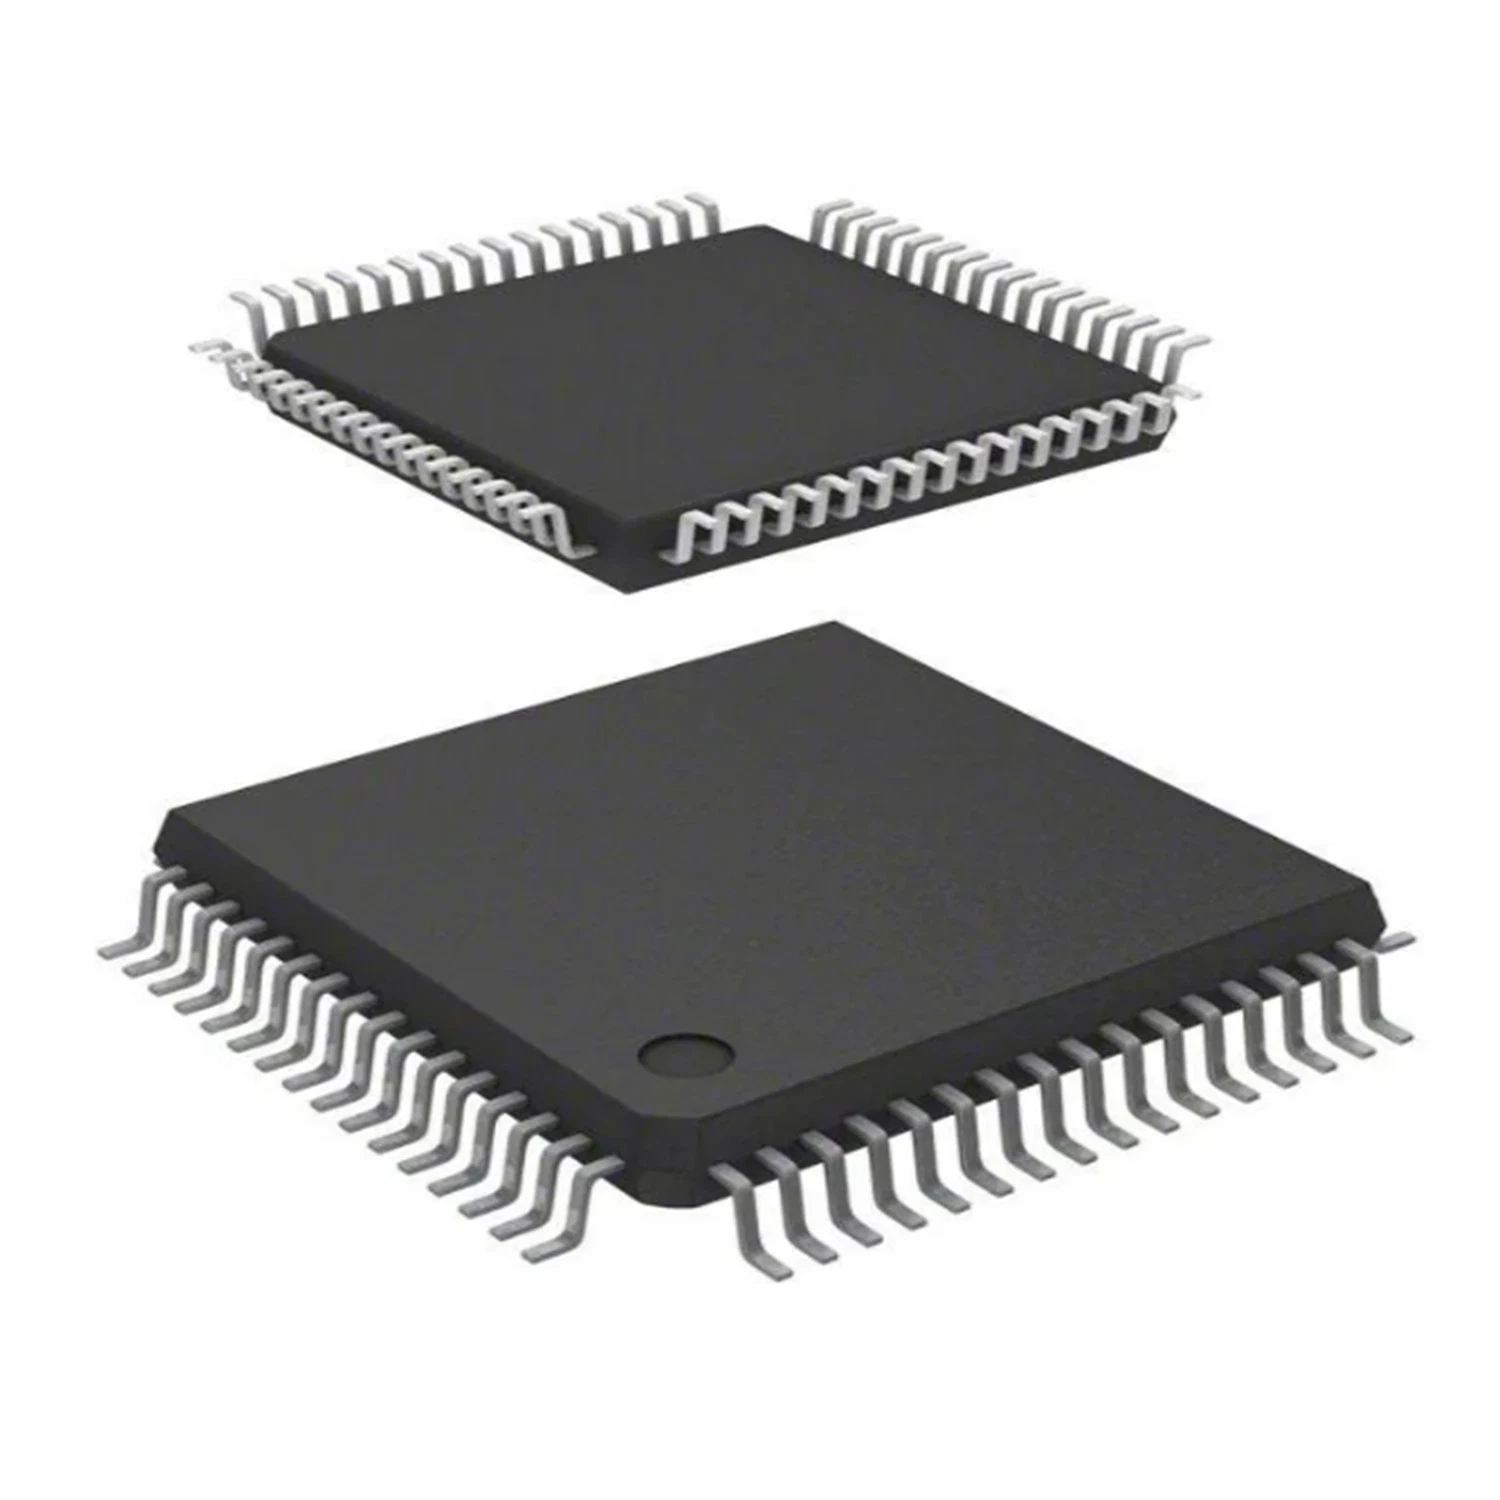 Spot IC Dspic33ep64mc506-I/PT integrierte Schaltung Elektronische Komponenten sind brandneu Und Original